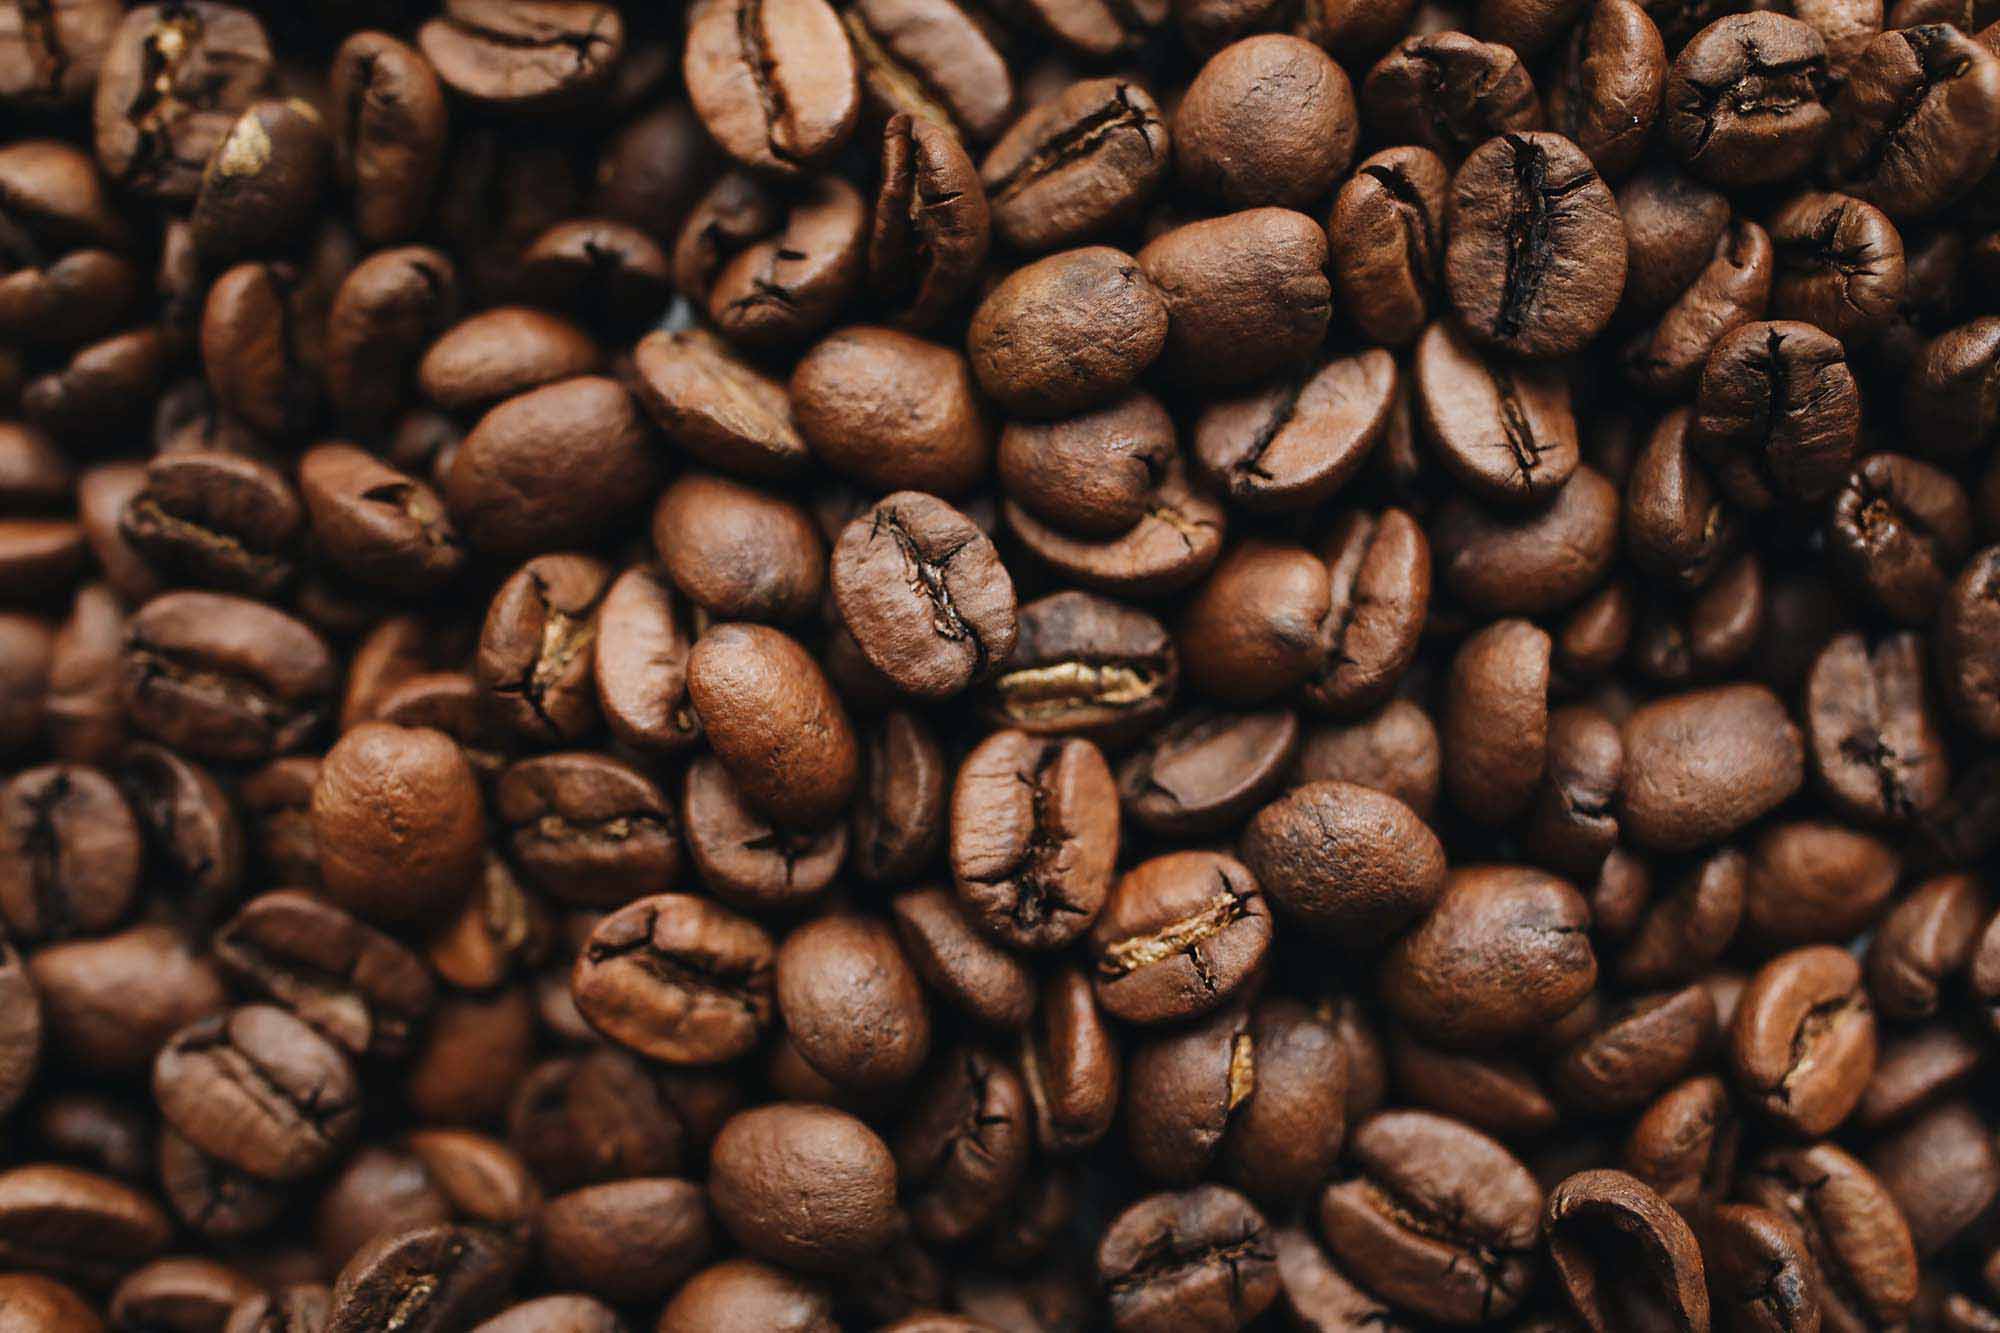 L'immagine mostra i vari semi del caffè già tostati pronti per essere utilizzati per il consumo.